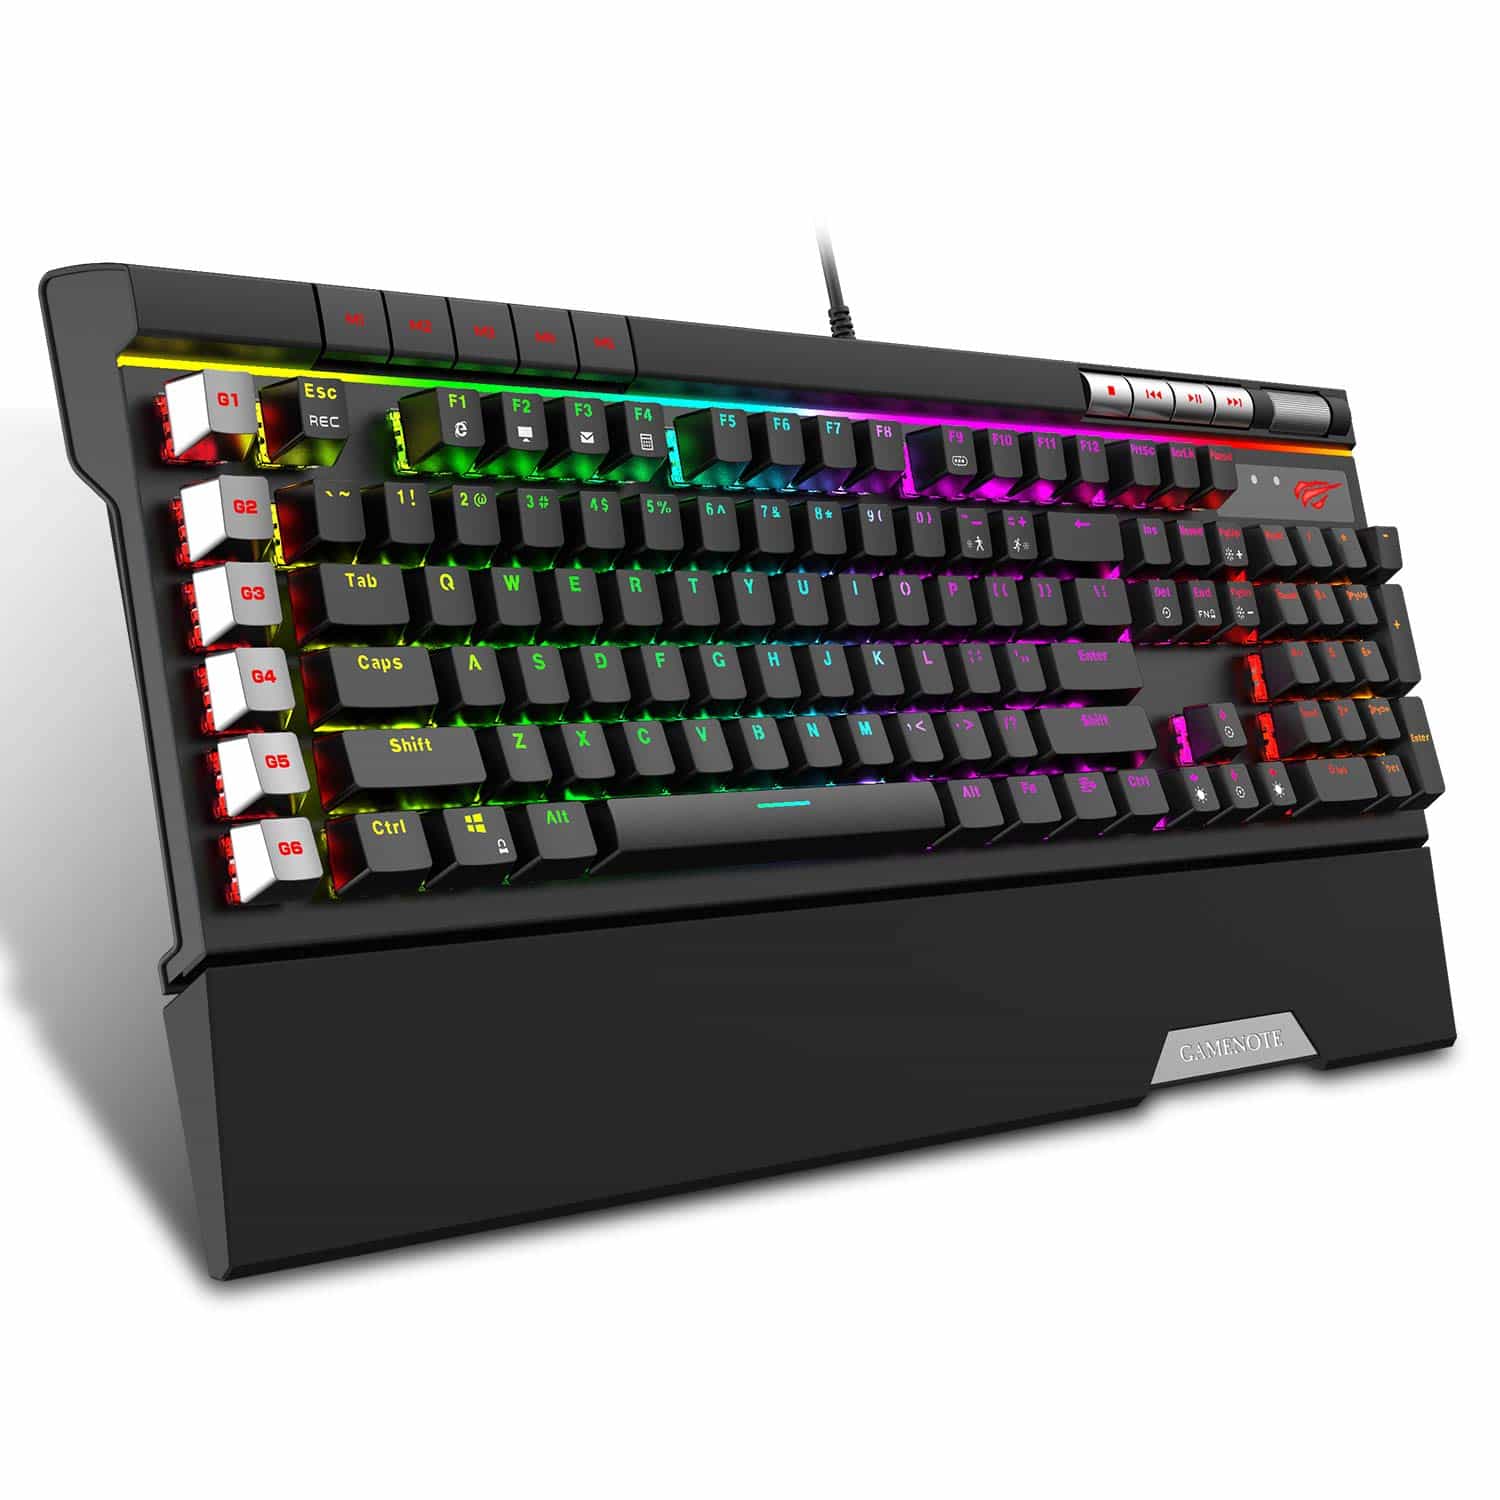 KB462L Mechanische Tastatur mit abnehmbarer Handballenauflage, RGB-Hintergrundbeleuchtung, Makrotasten